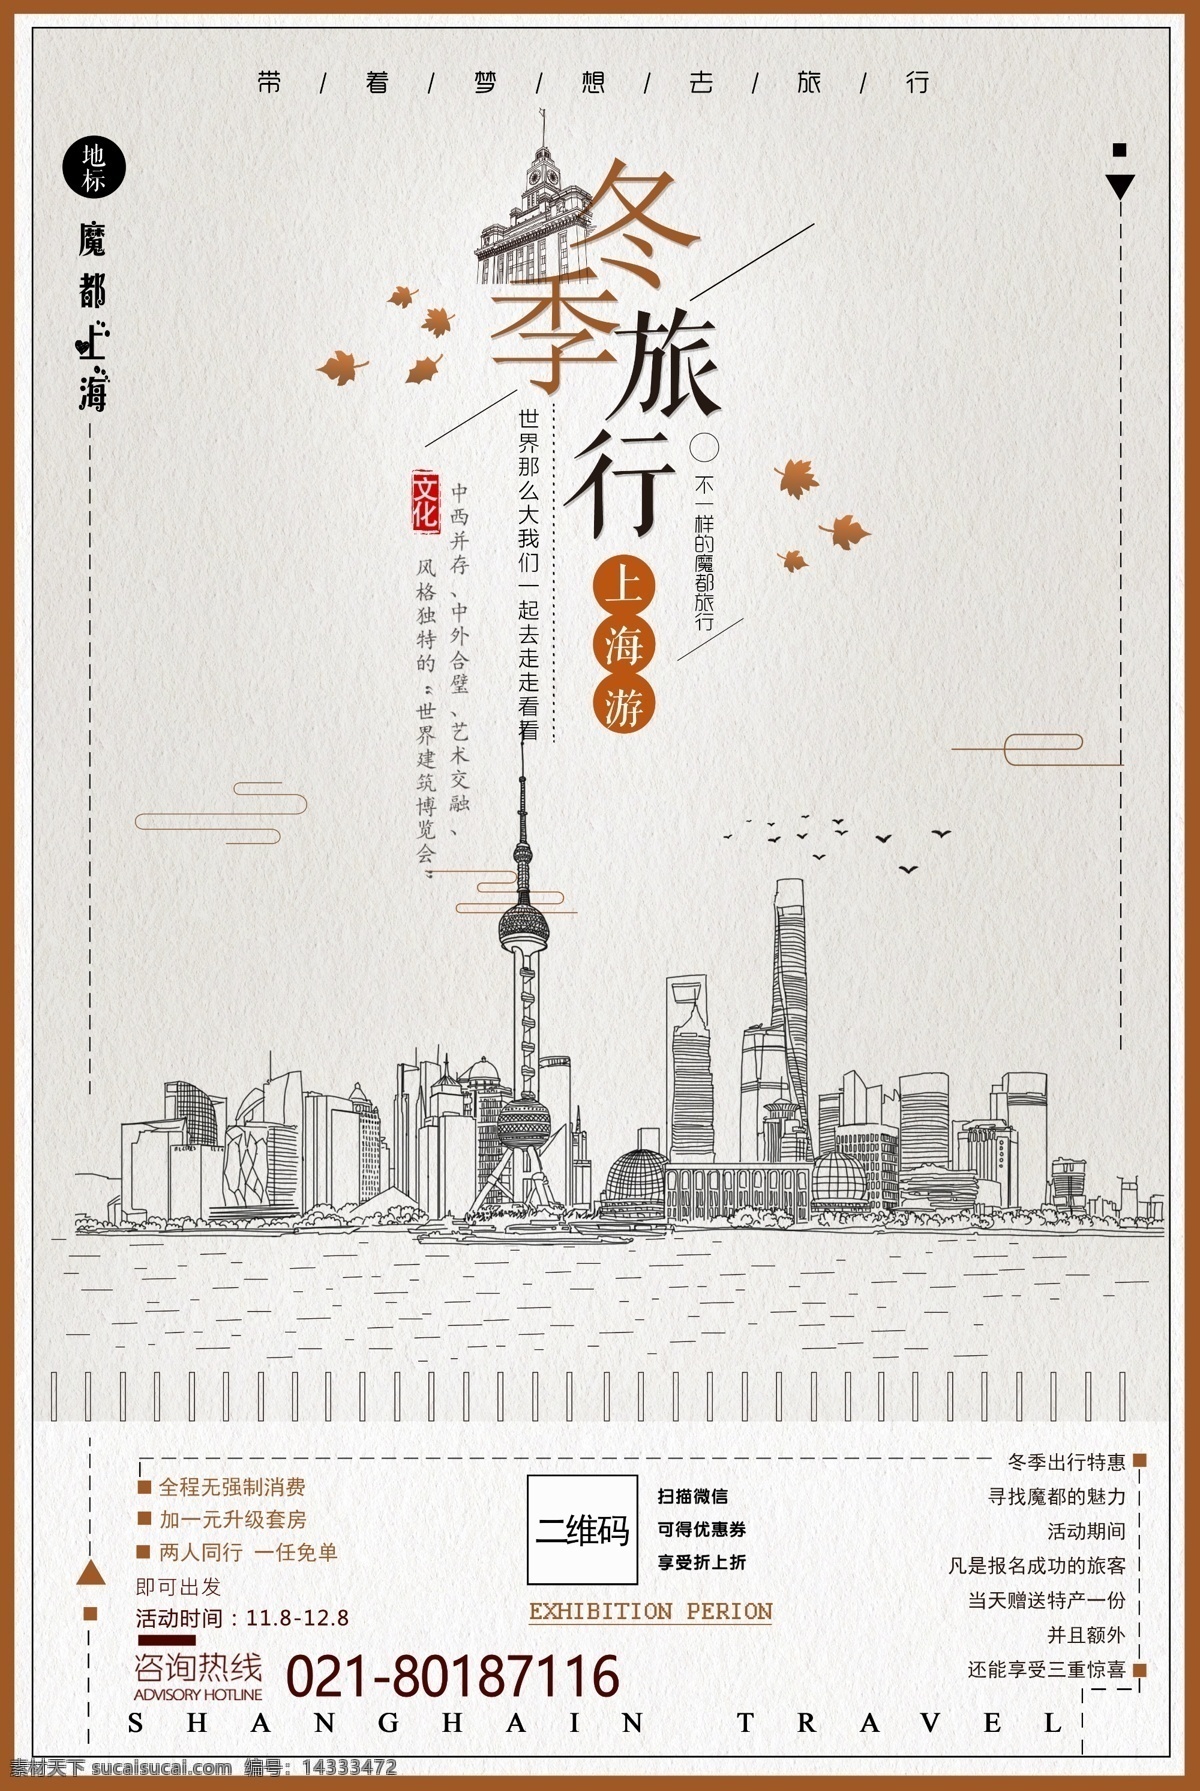 冬季 中国 上海 素描 风格 城市旅游 海报 简约 促销 特色 美食 意境 创意 商场 文化 旅游 旅游海报